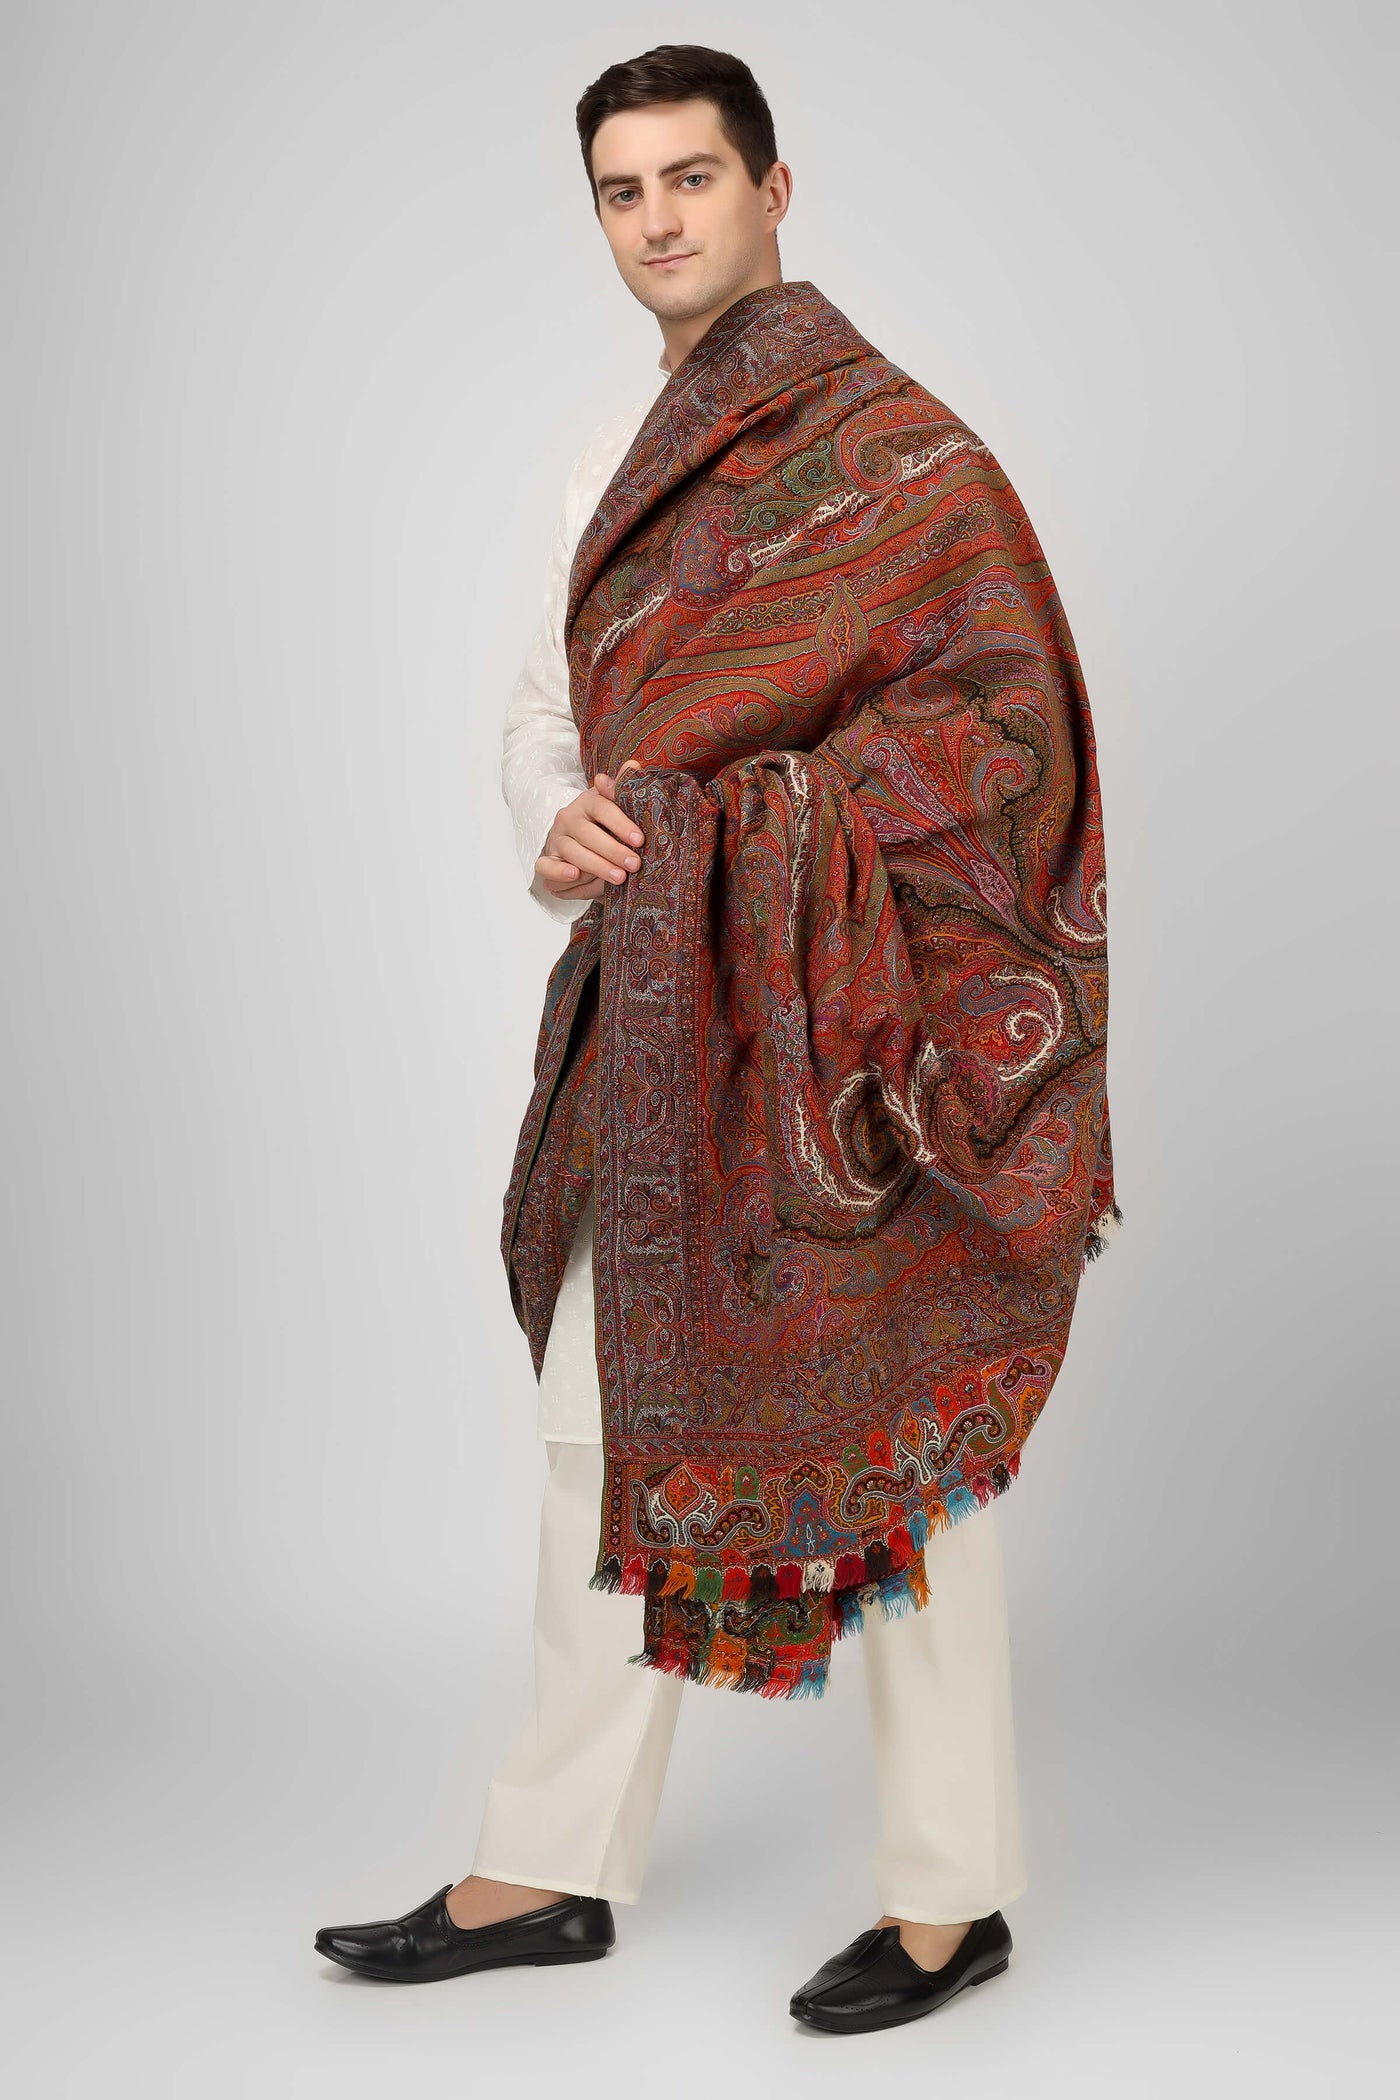 RICH - QATAR - KUWAIT- BEHREEN -antique kashmir long shawl ,Vintage Kashmir Long Shawl - Full Size, Traditional Design